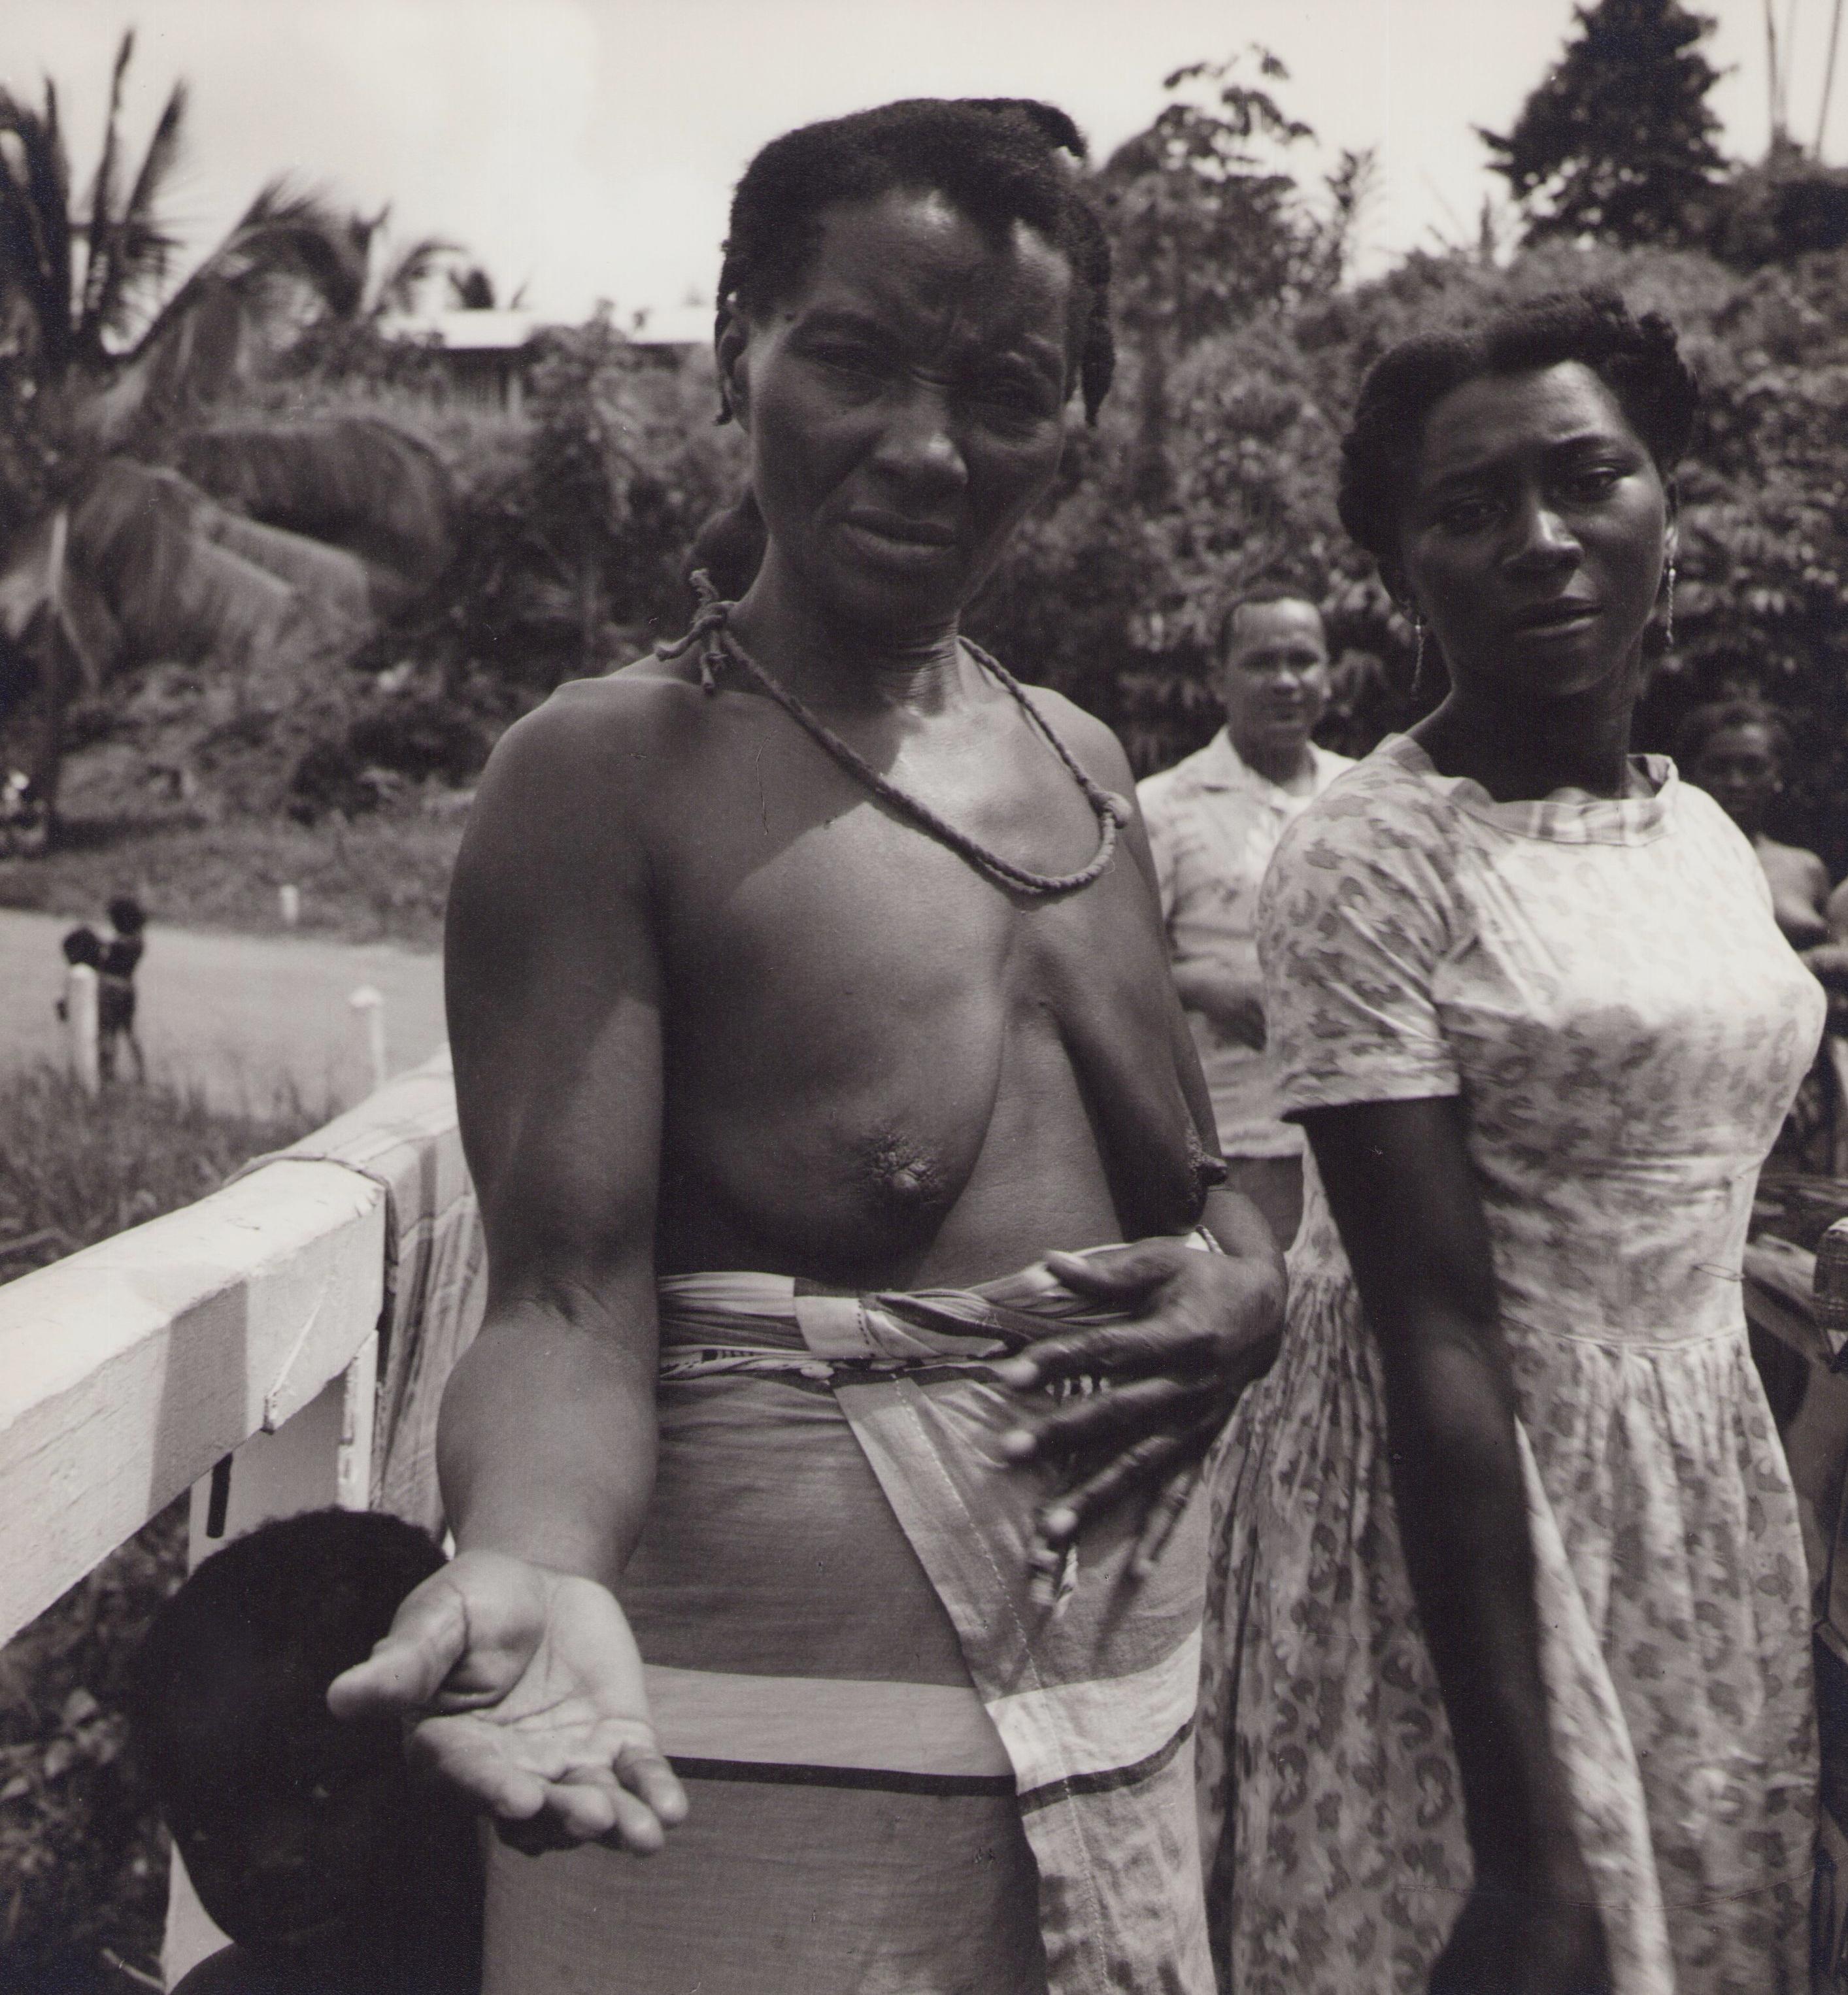 Hanna Seidel Portrait Photograph - Suriname, People, Village, Black and White Photography, 1960s, 26, 1 x 24, 1 cm